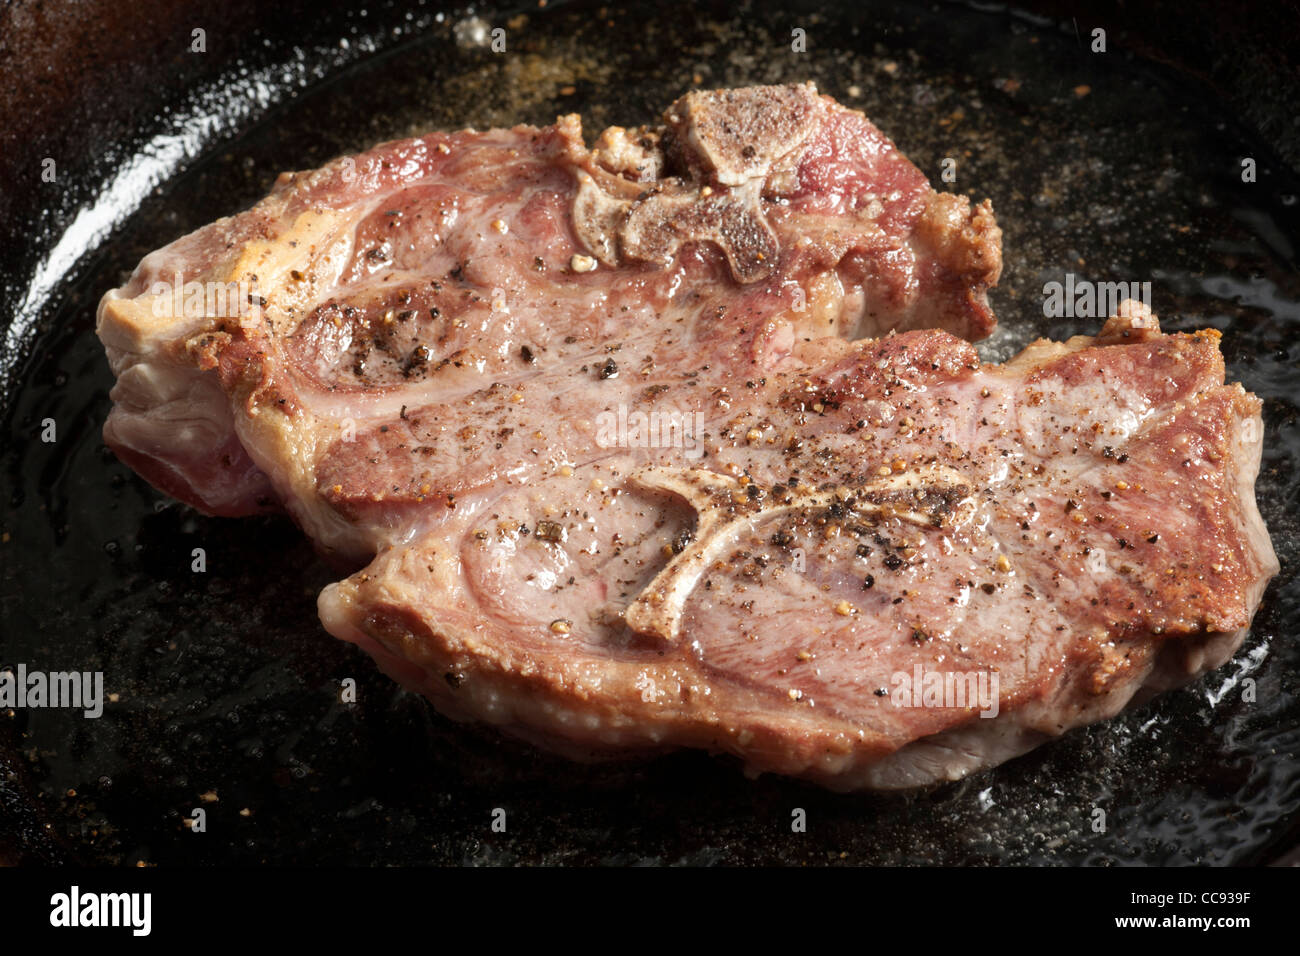 Ein Lammkotelett, Braten in einer Pfanne Stockfotografie - Alamy